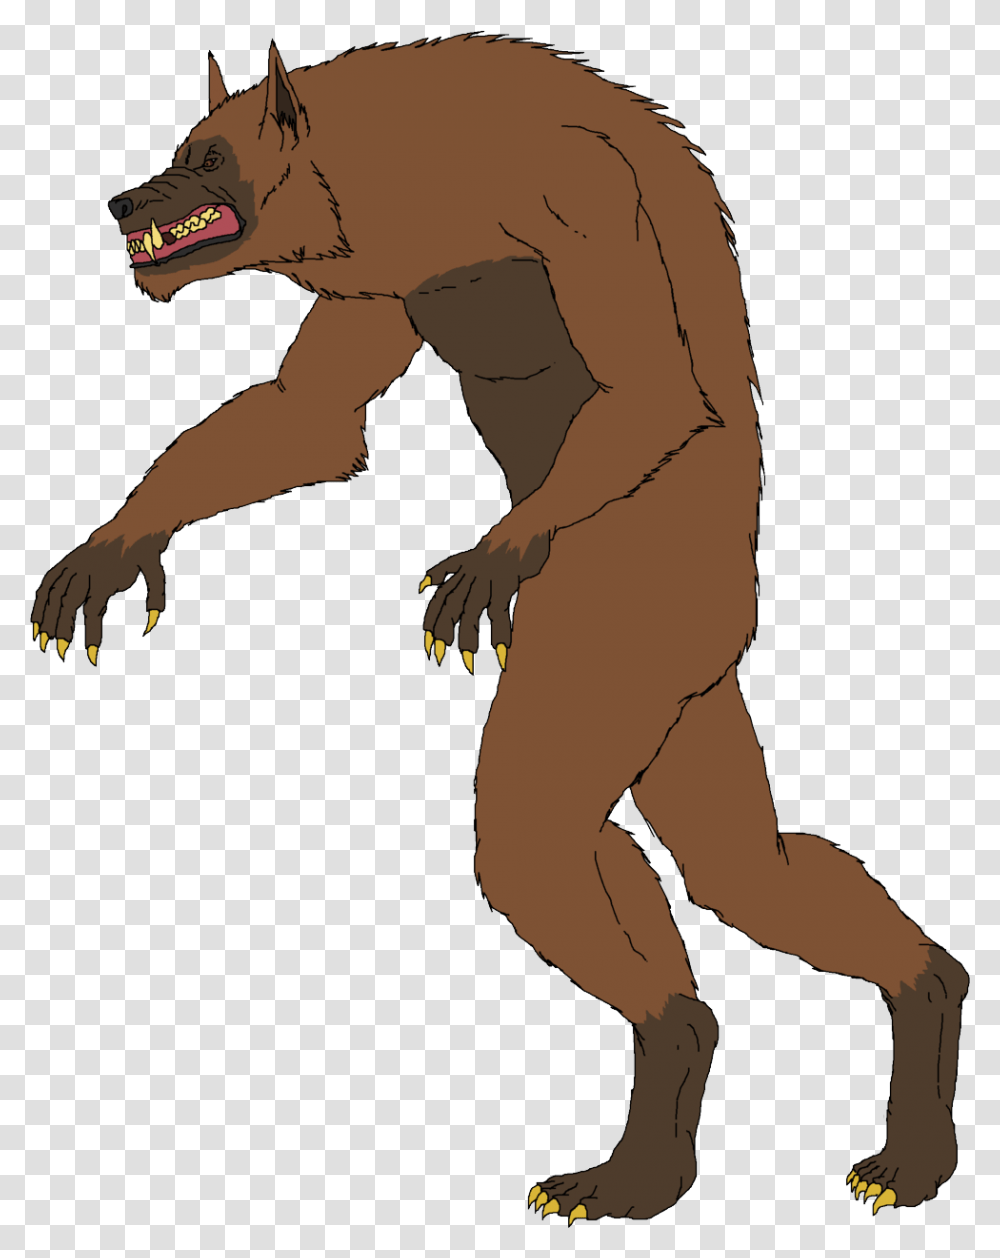 Fictional Character Werewolf Gabriel Van Helsing Quadruped Werewolf, Animal, Person, Human, Mammal Transparent Png